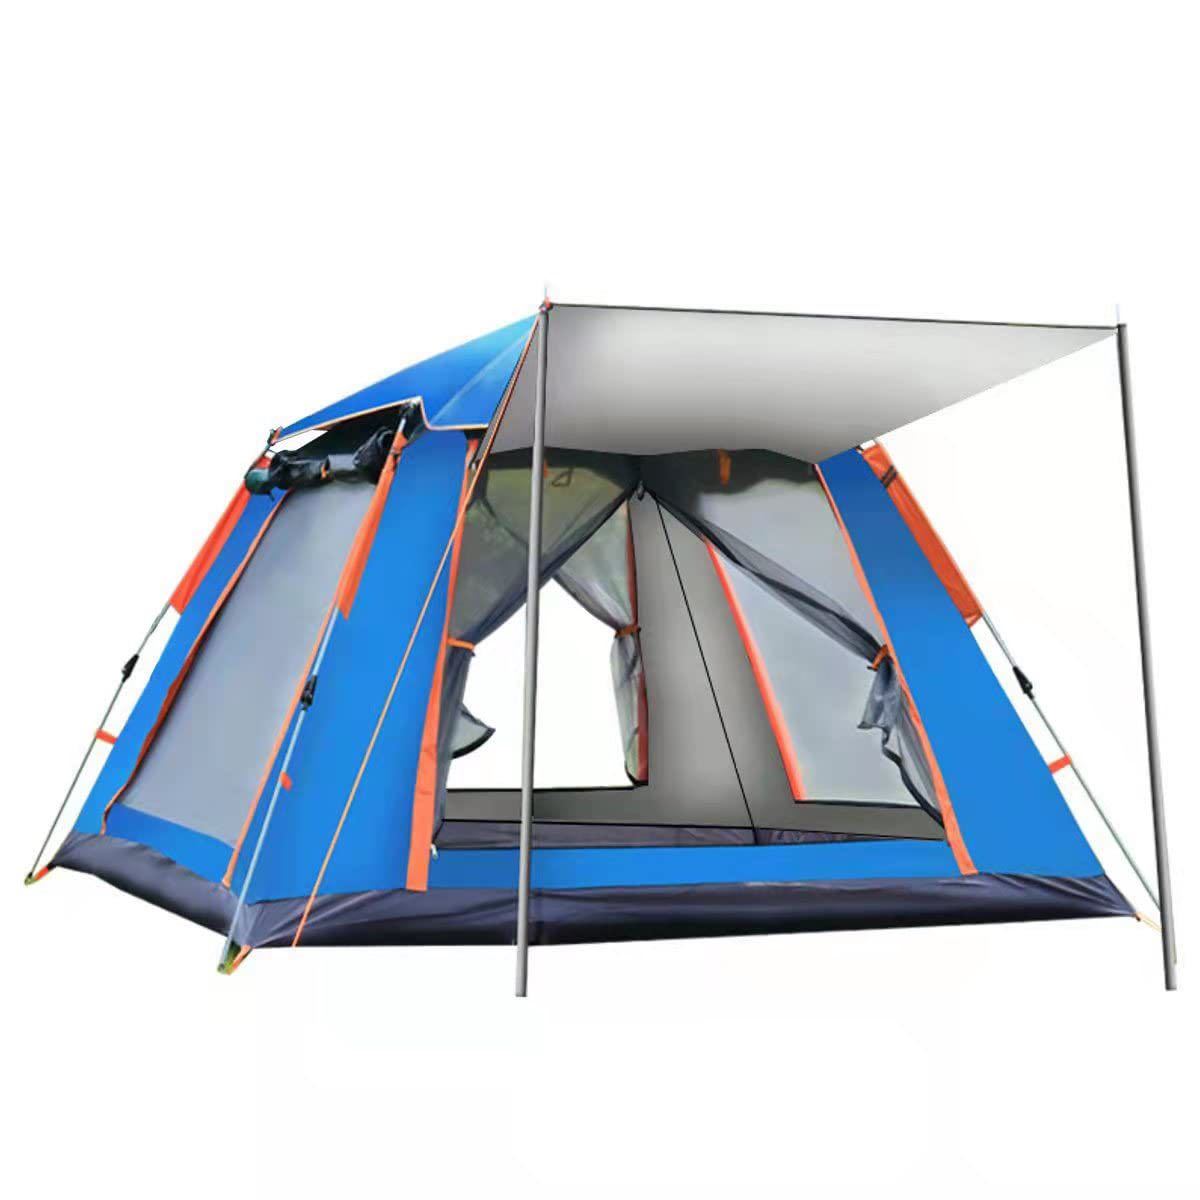 【新品】 テント 2~4人用 ワンタッチテント 簡単設営 前室付き UVカット 防水  アウトドア用品 キャンプ 防風 海 プール